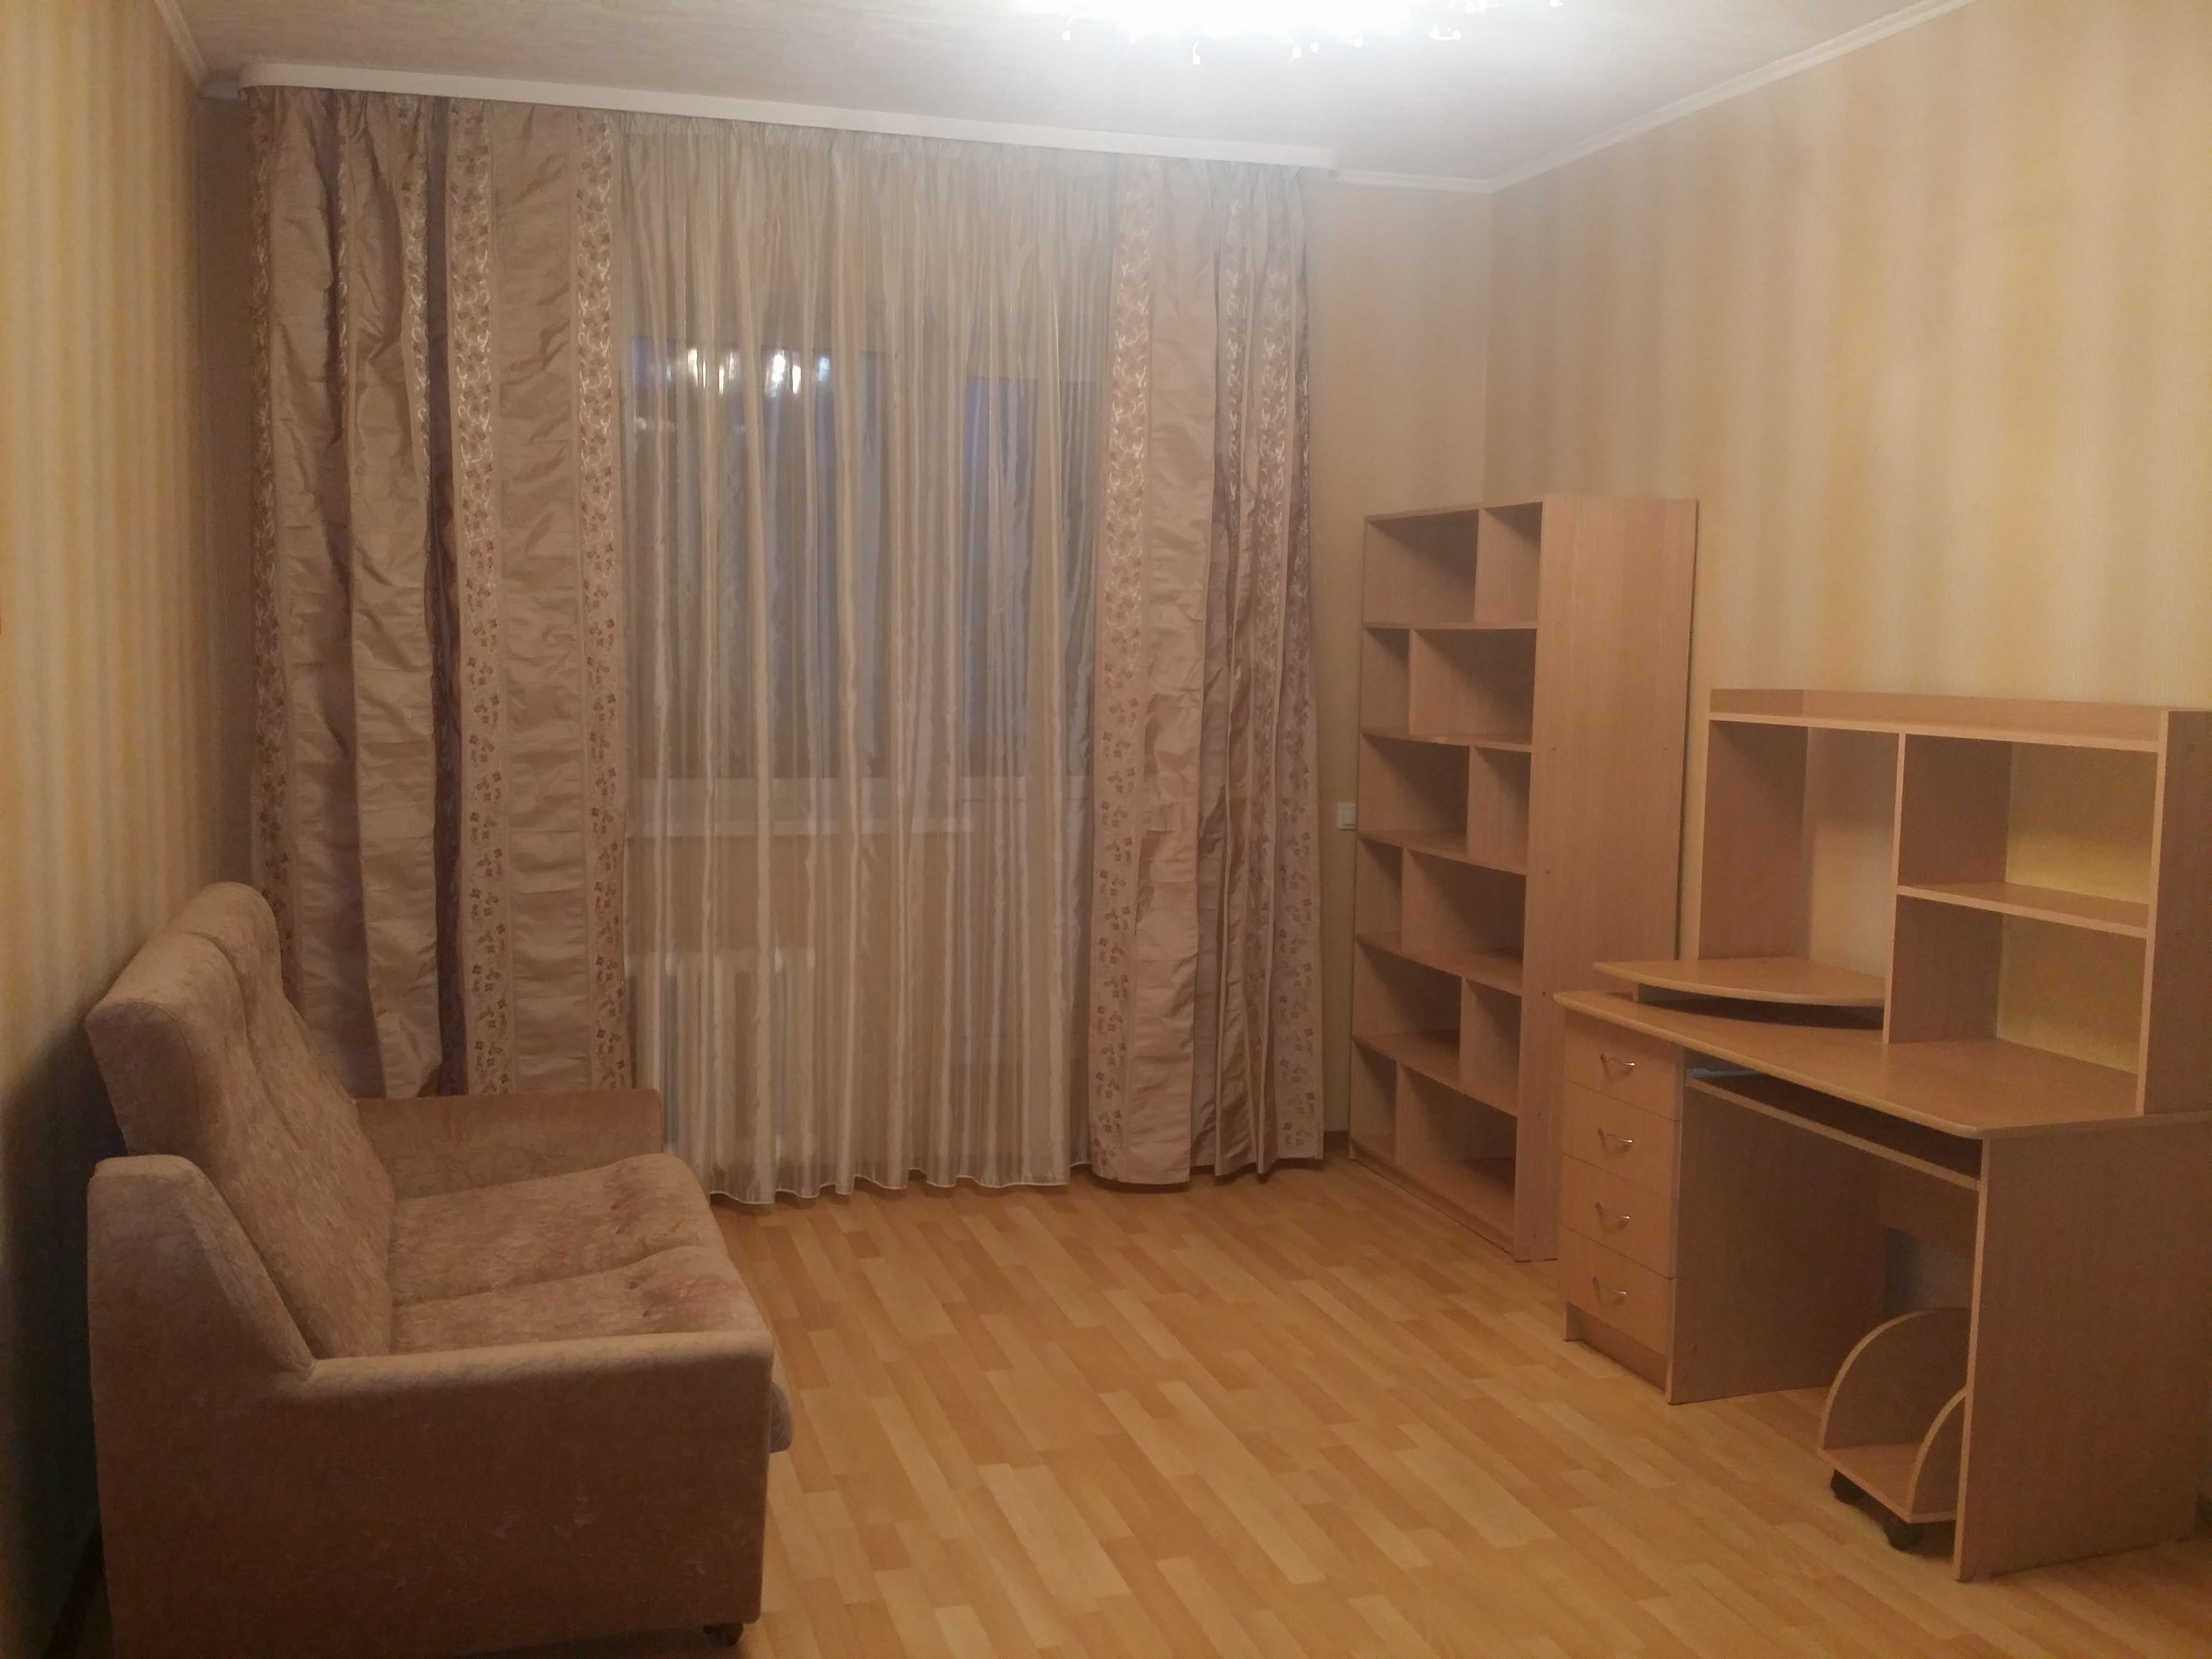 Однокомнатные квартиры в Железнодорожном районе города Ульяновска.